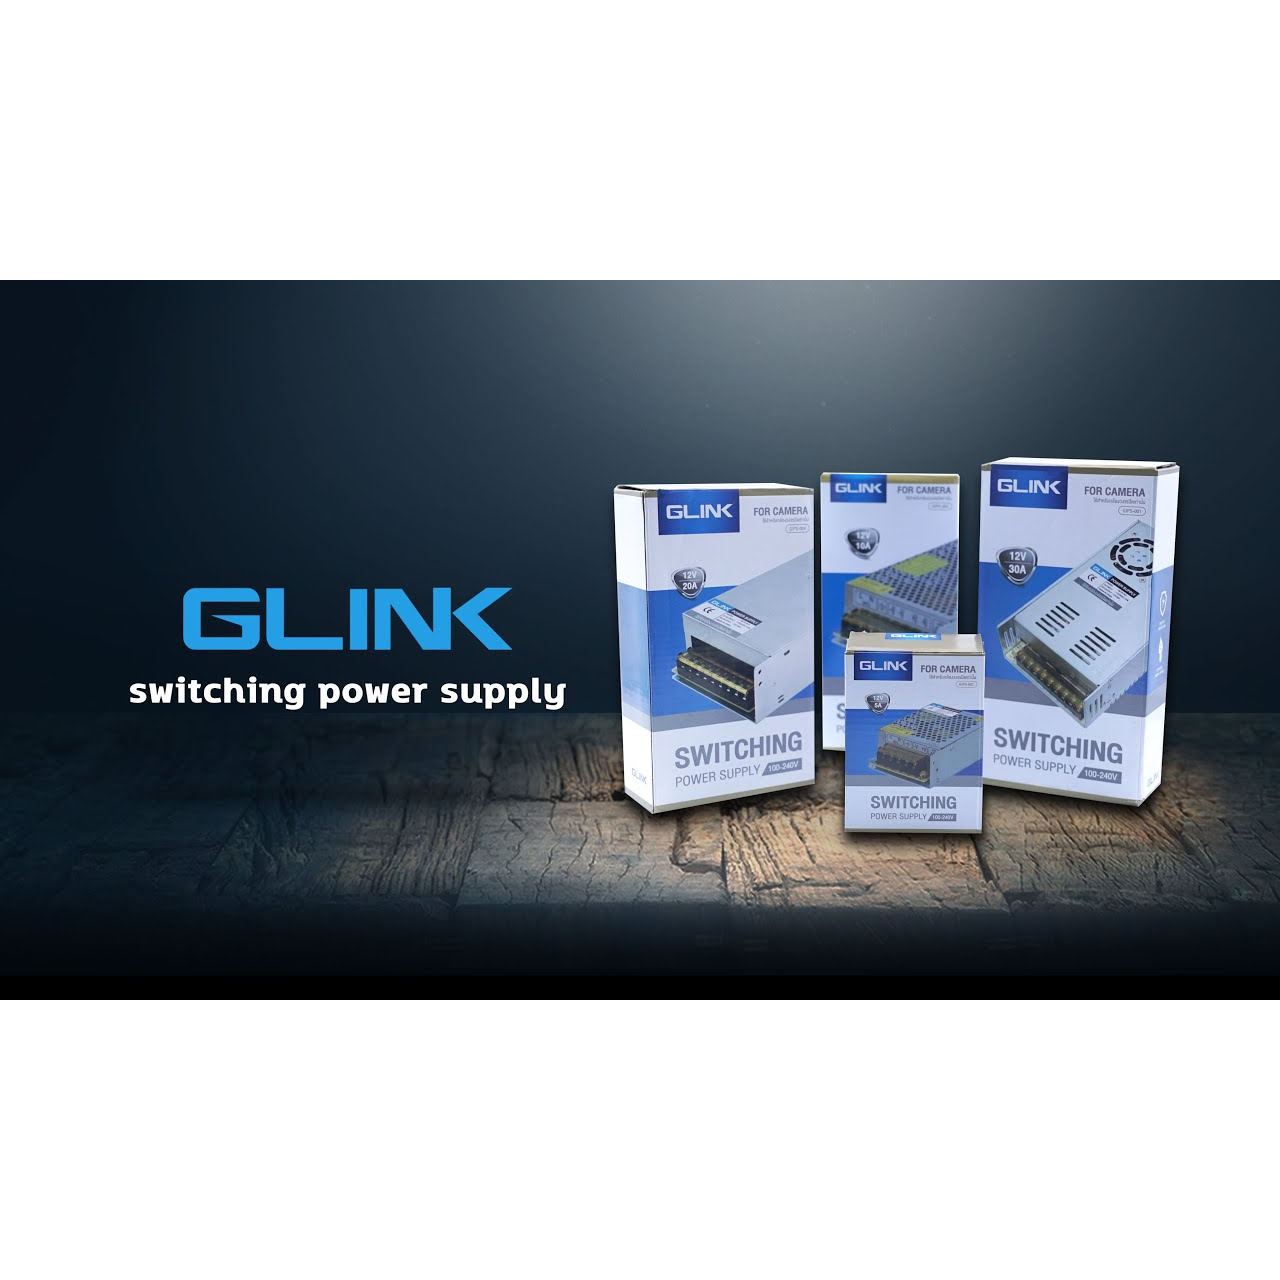 glink-gips003-power-supply-12v-10a-รุ่น-gips-003-ใช้สำหรับกล้องวงจรปิดเท่านั้น